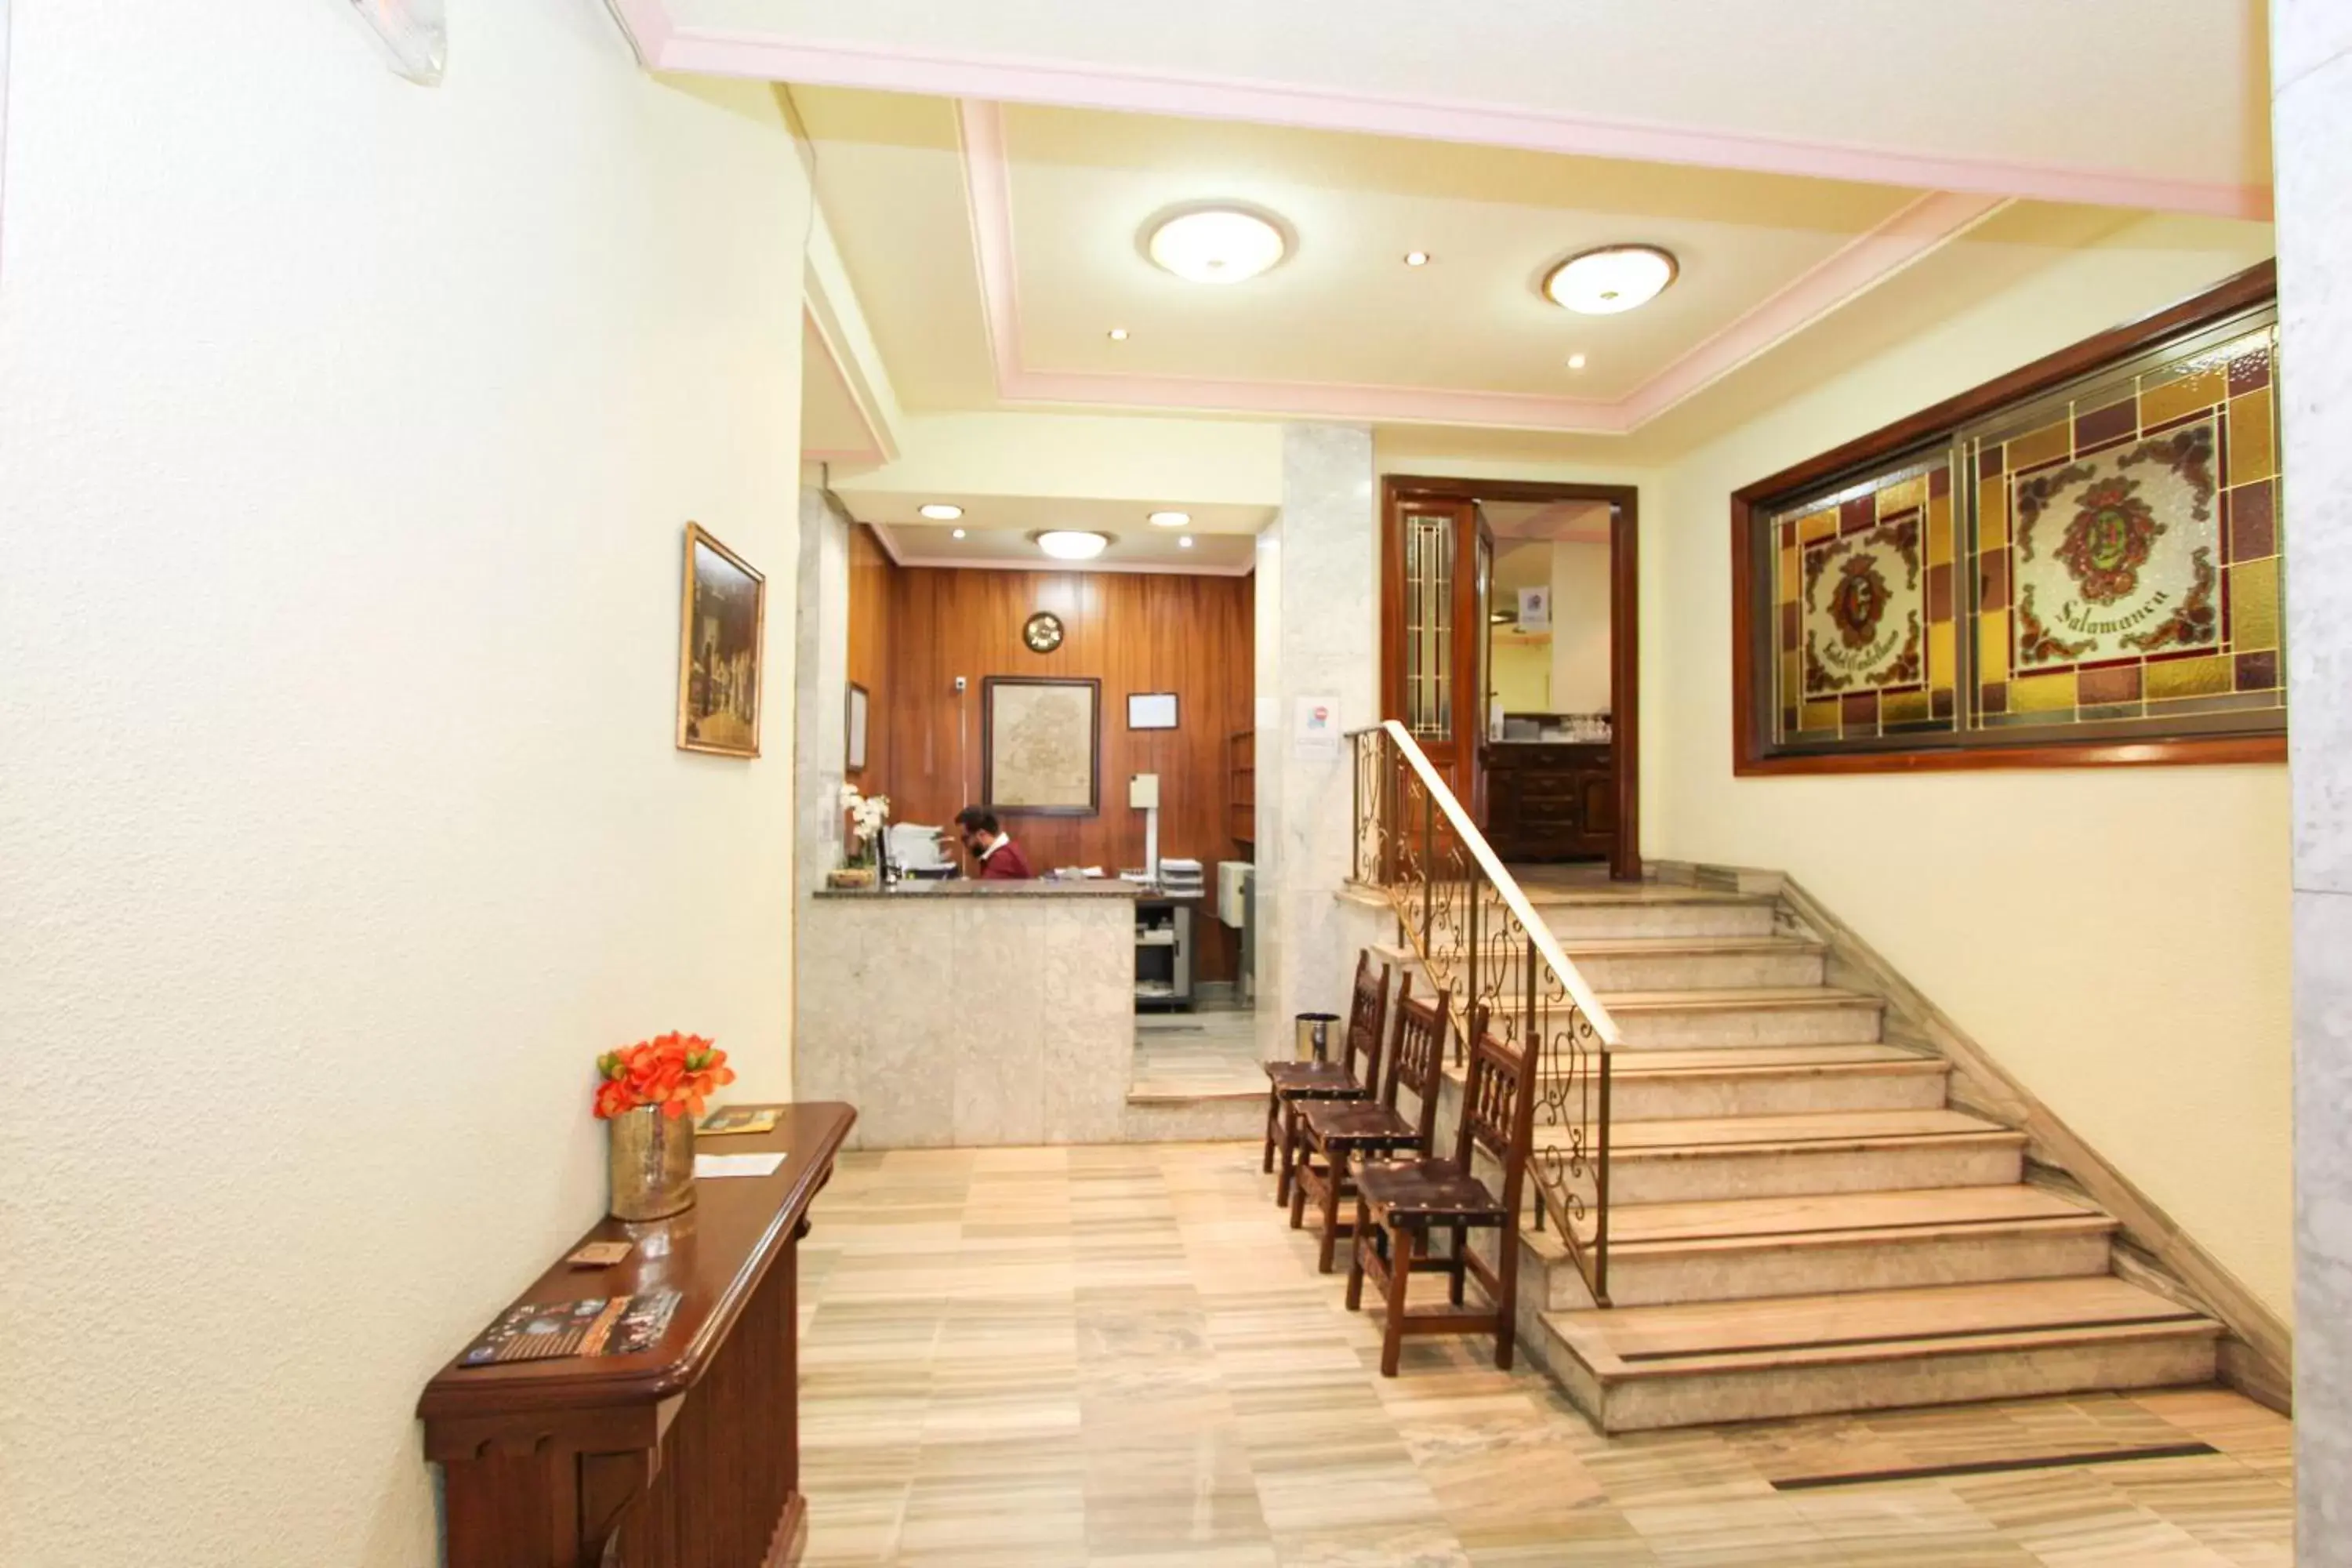 Lobby or reception in Hotel Castellano Centro